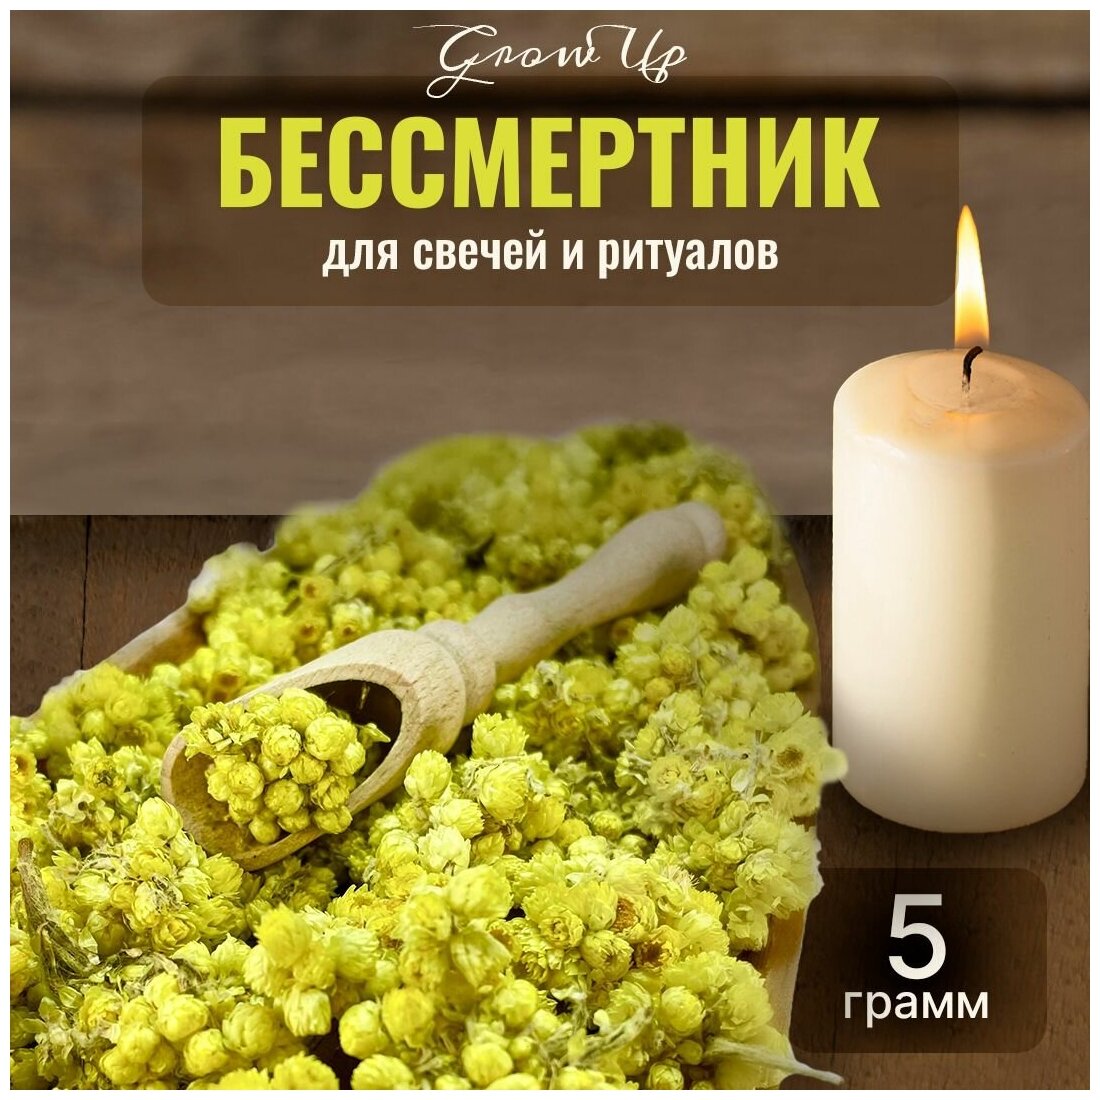 Сухая трава Бессмертник (цветы) для свечей и ритуалов 5 гр